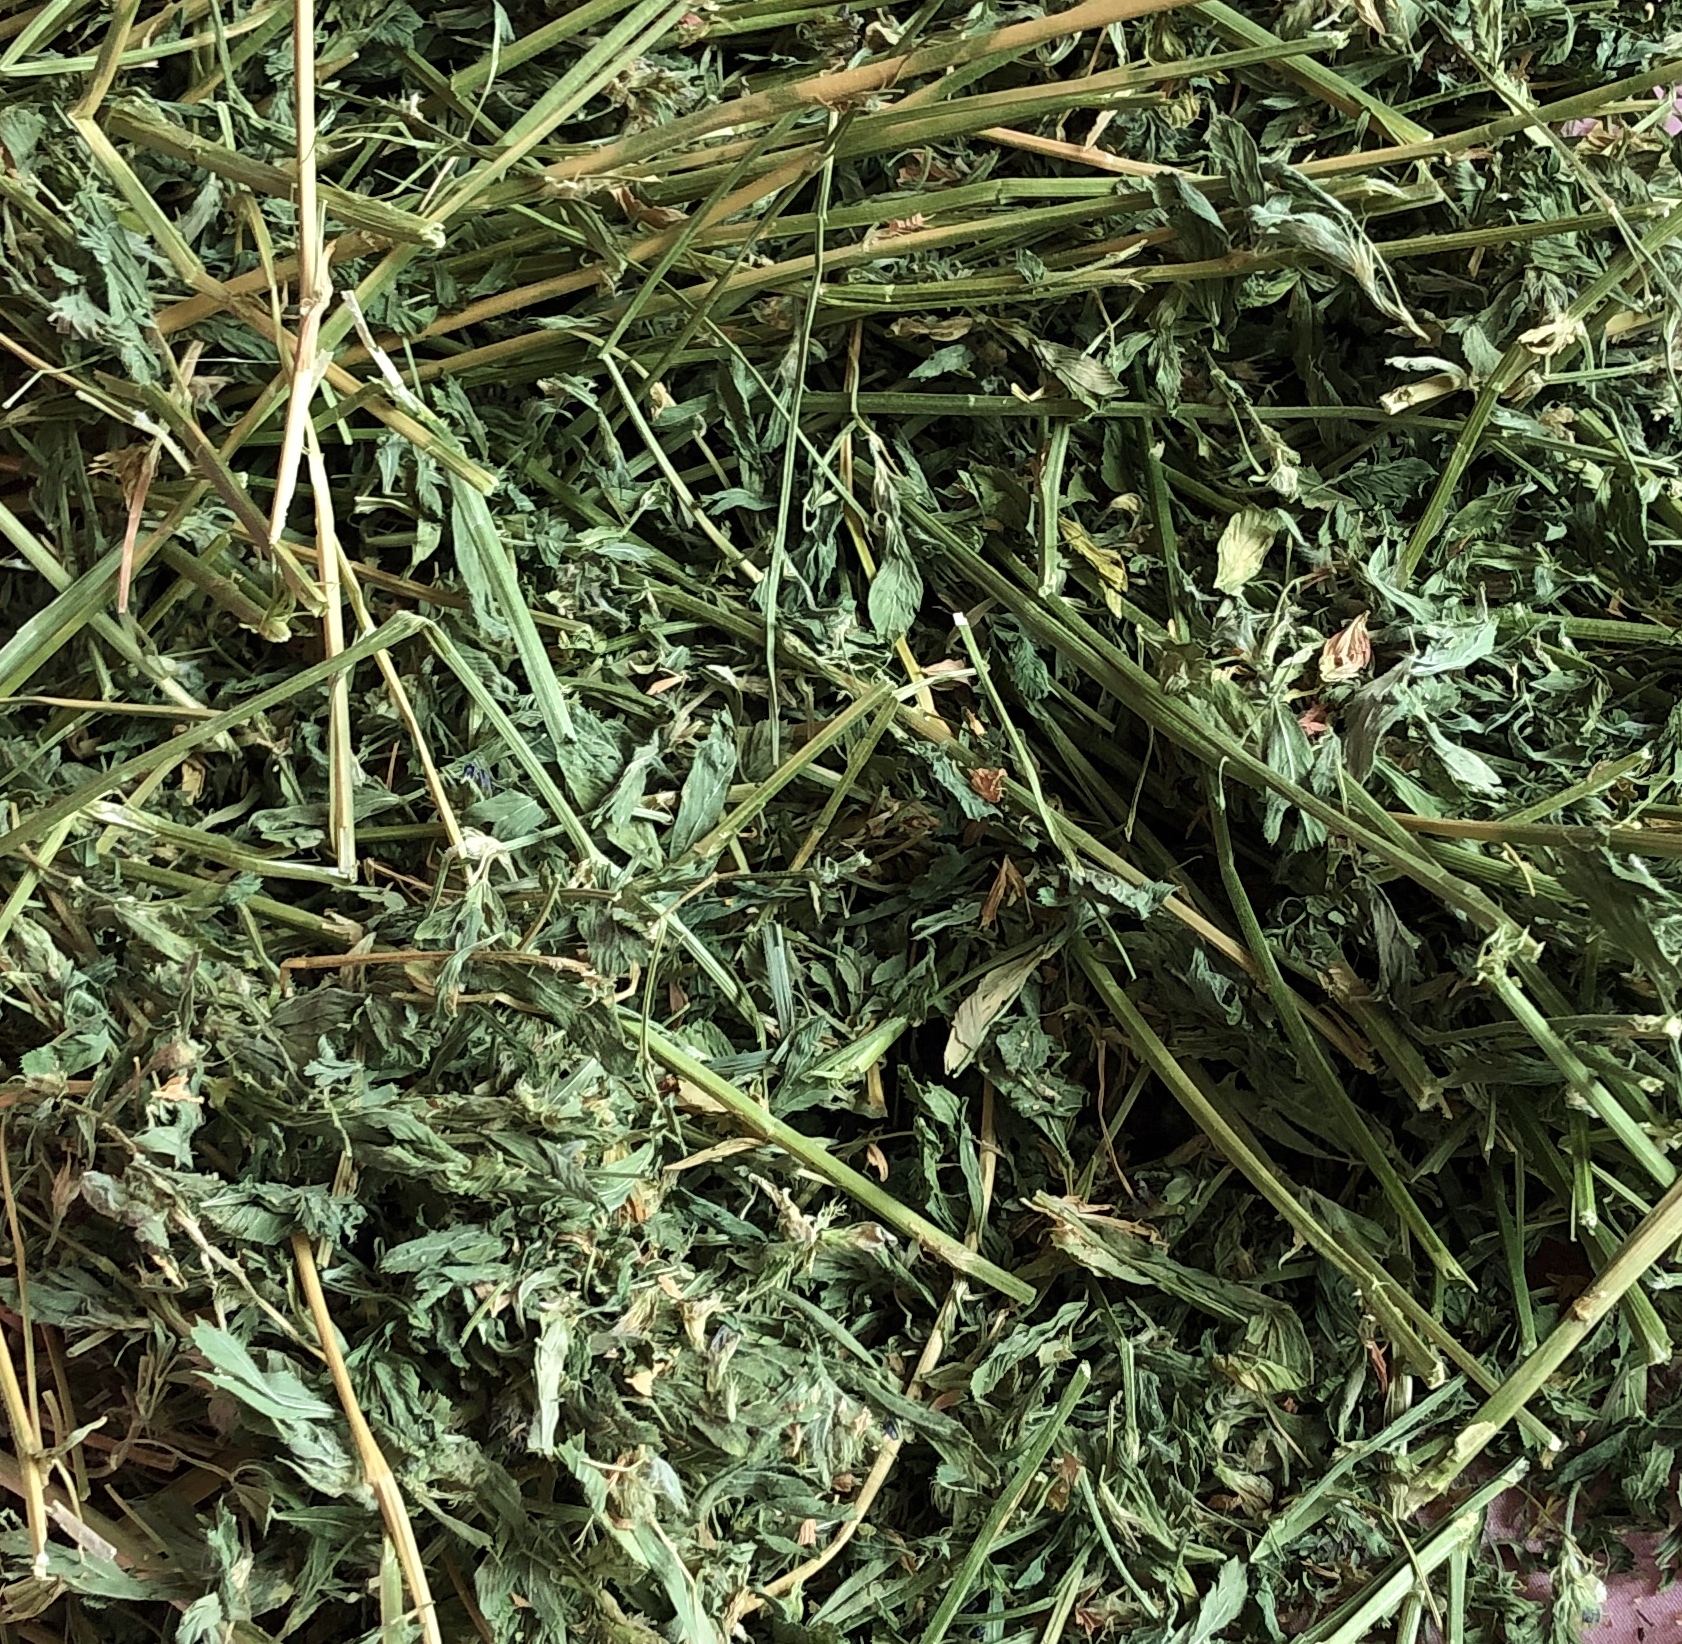 is alfalfa hay good for bunnies